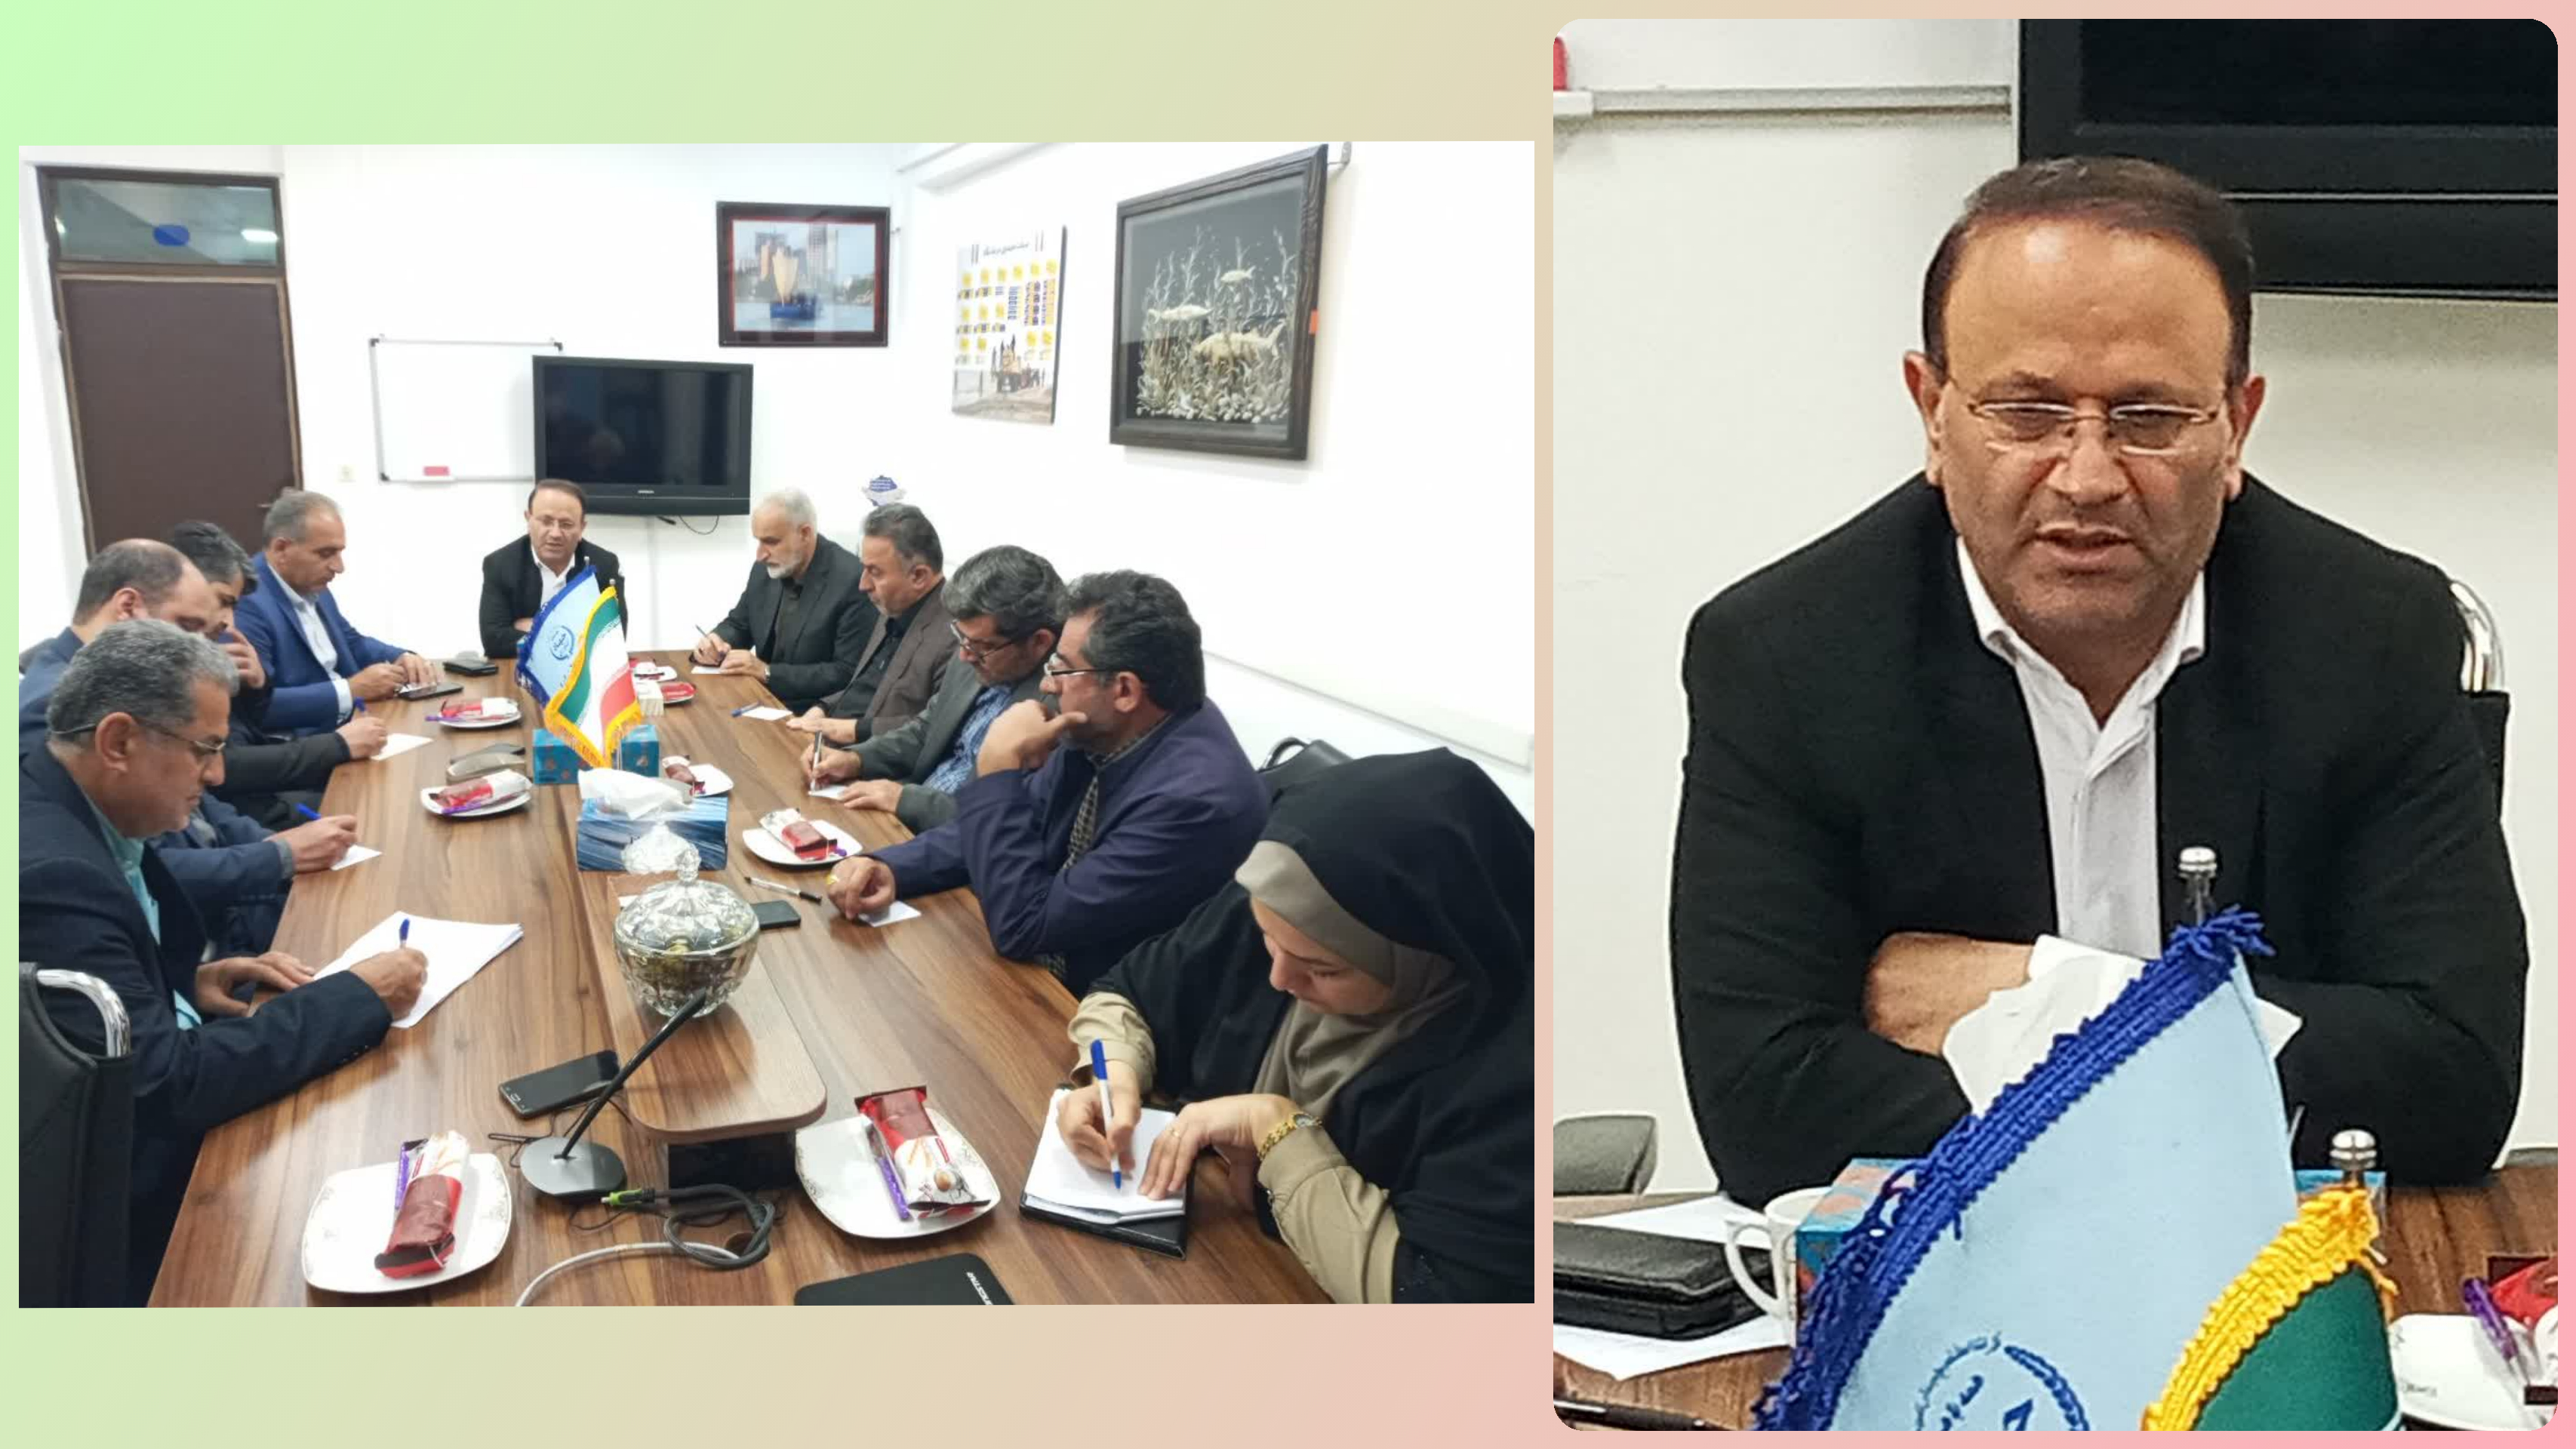  جلسه بررسی روند طرح کمک به تکثیر طبیعی دراداره کل شیلات استان مازندران